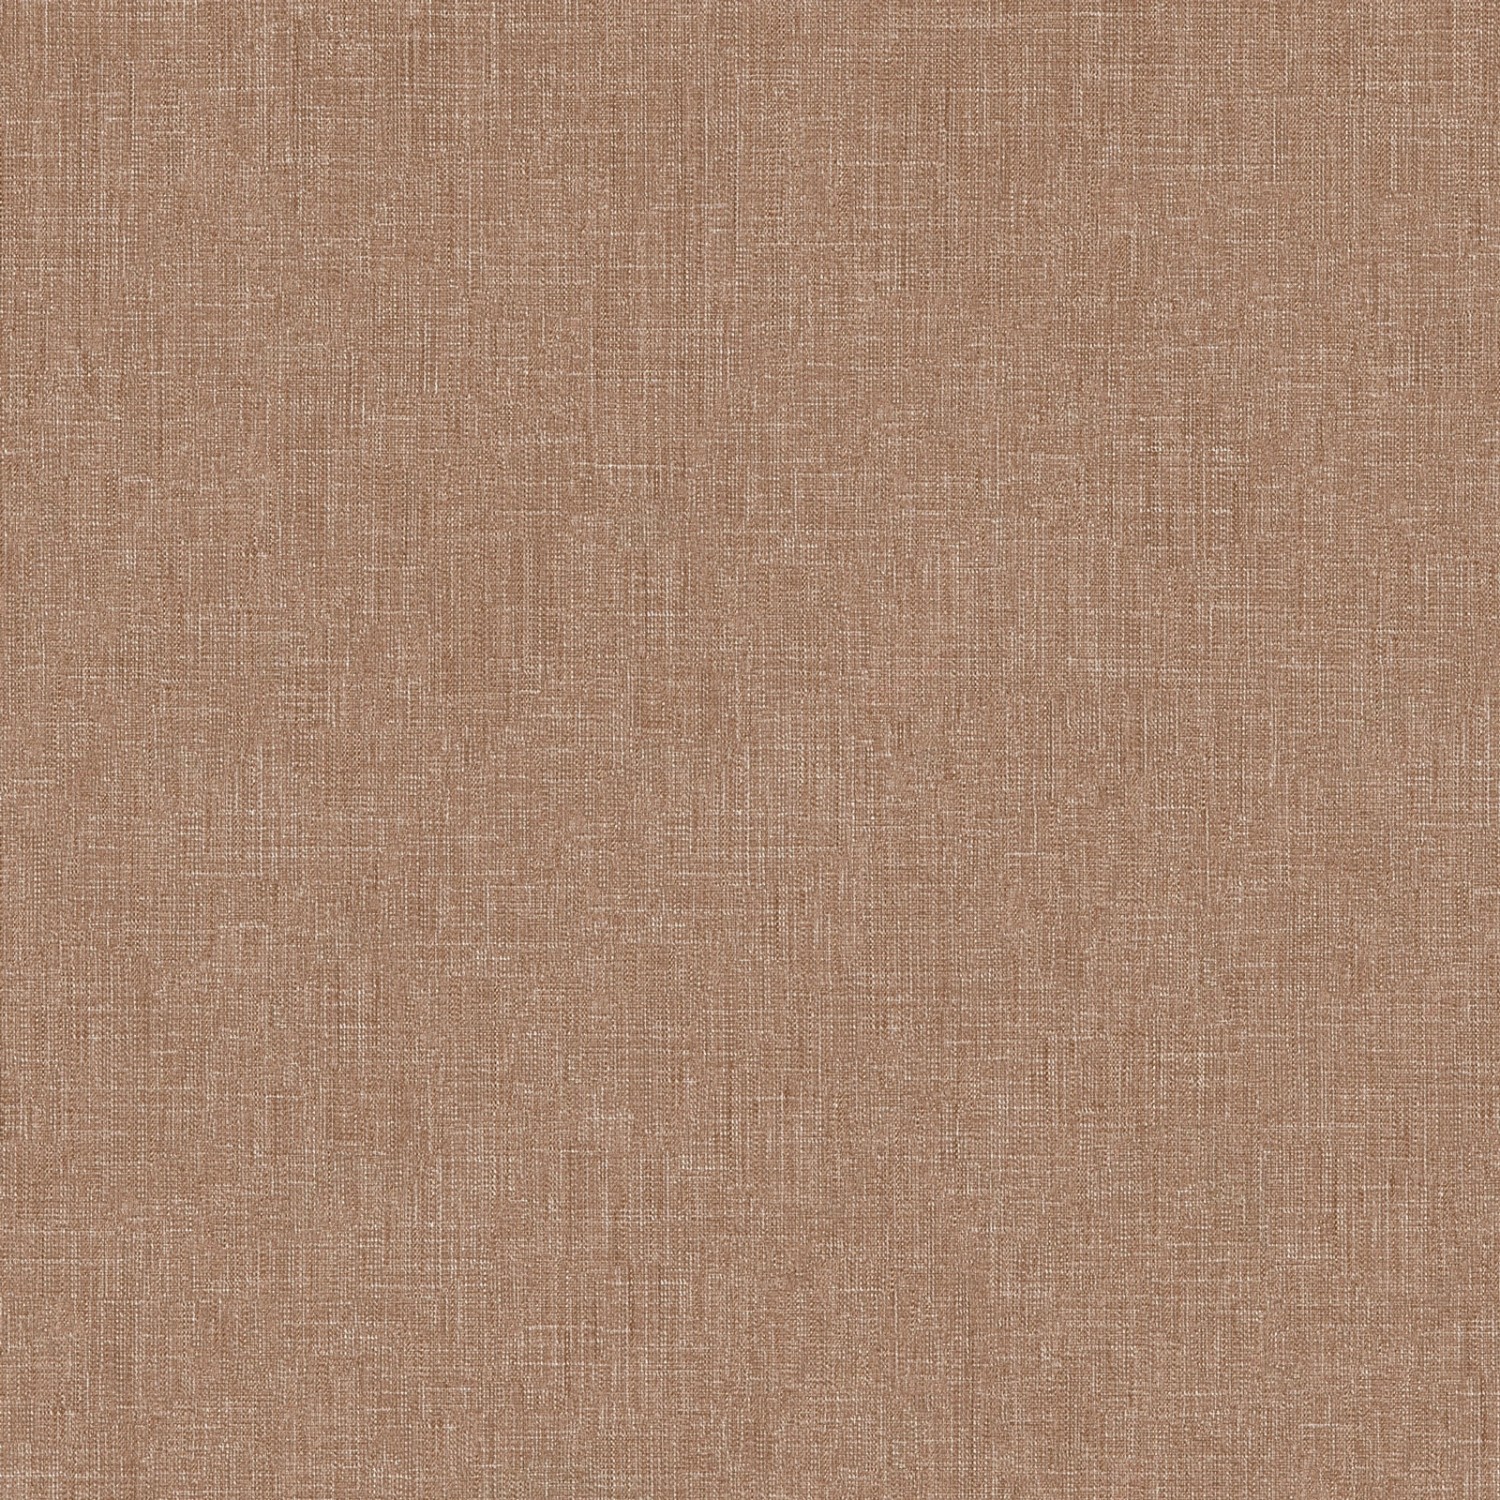 Bricoflor Terracotta Tapete in Textiloptik Leinen Vliestapete in Rot Braun Ideal für Wohnzimmer und Schlafzimmer Uni Wandtapete von Bricoflor